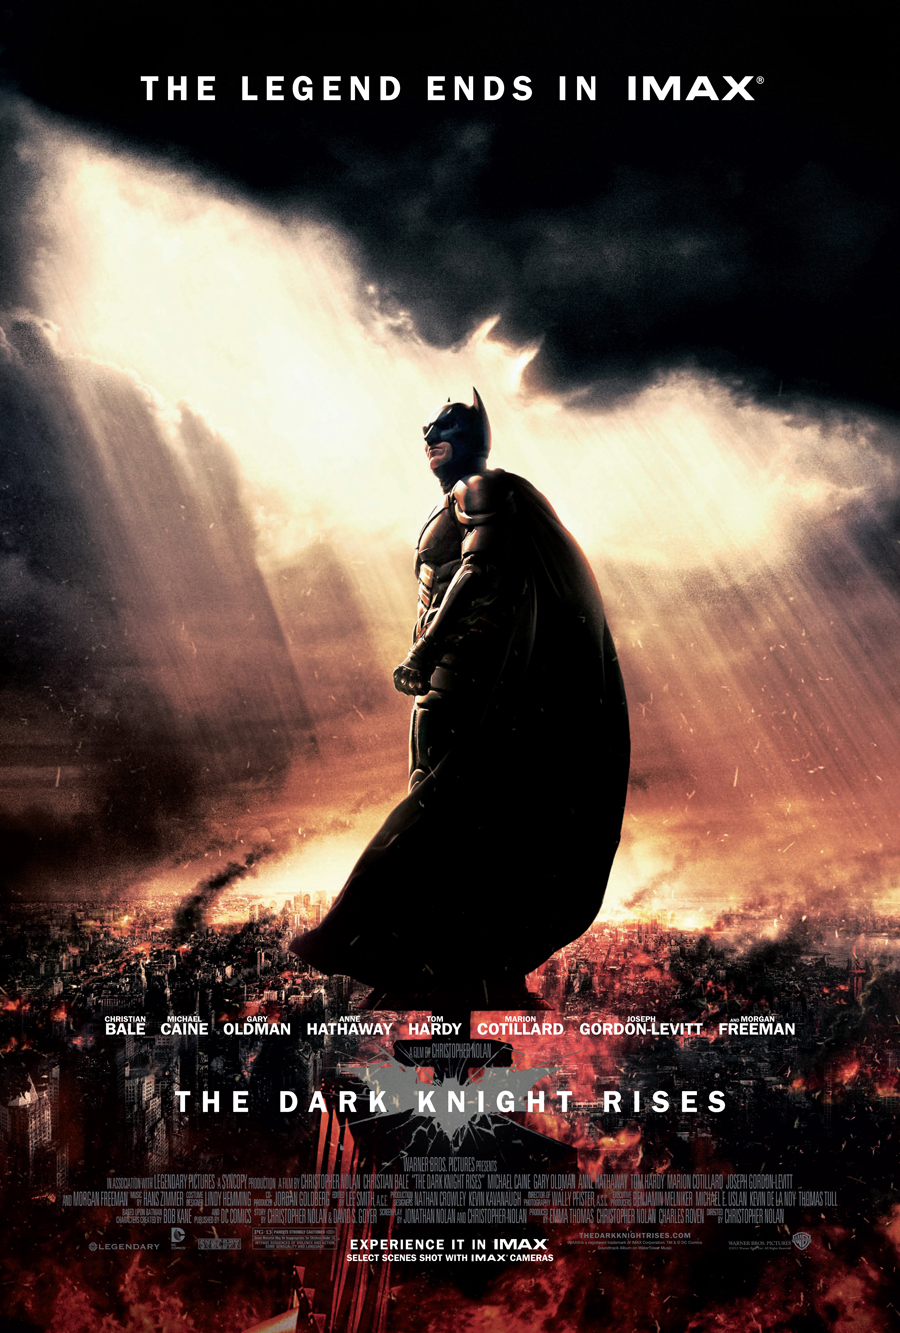 The Dark Knight Rises - IMAX - Batman poster